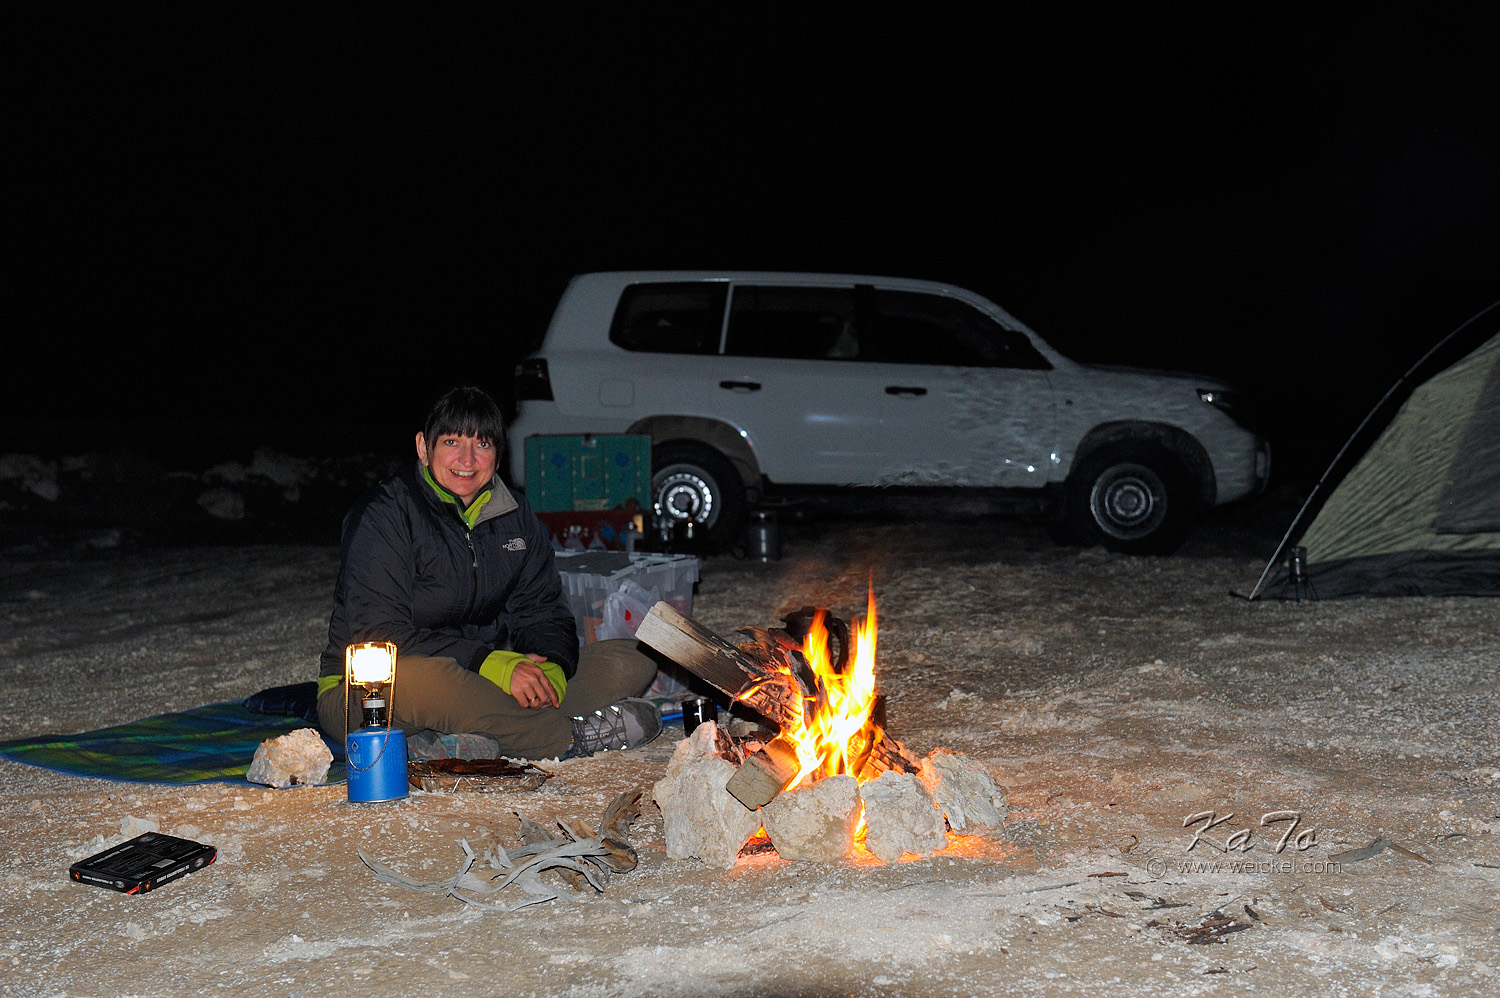 Cold night in the Rub al-Khali